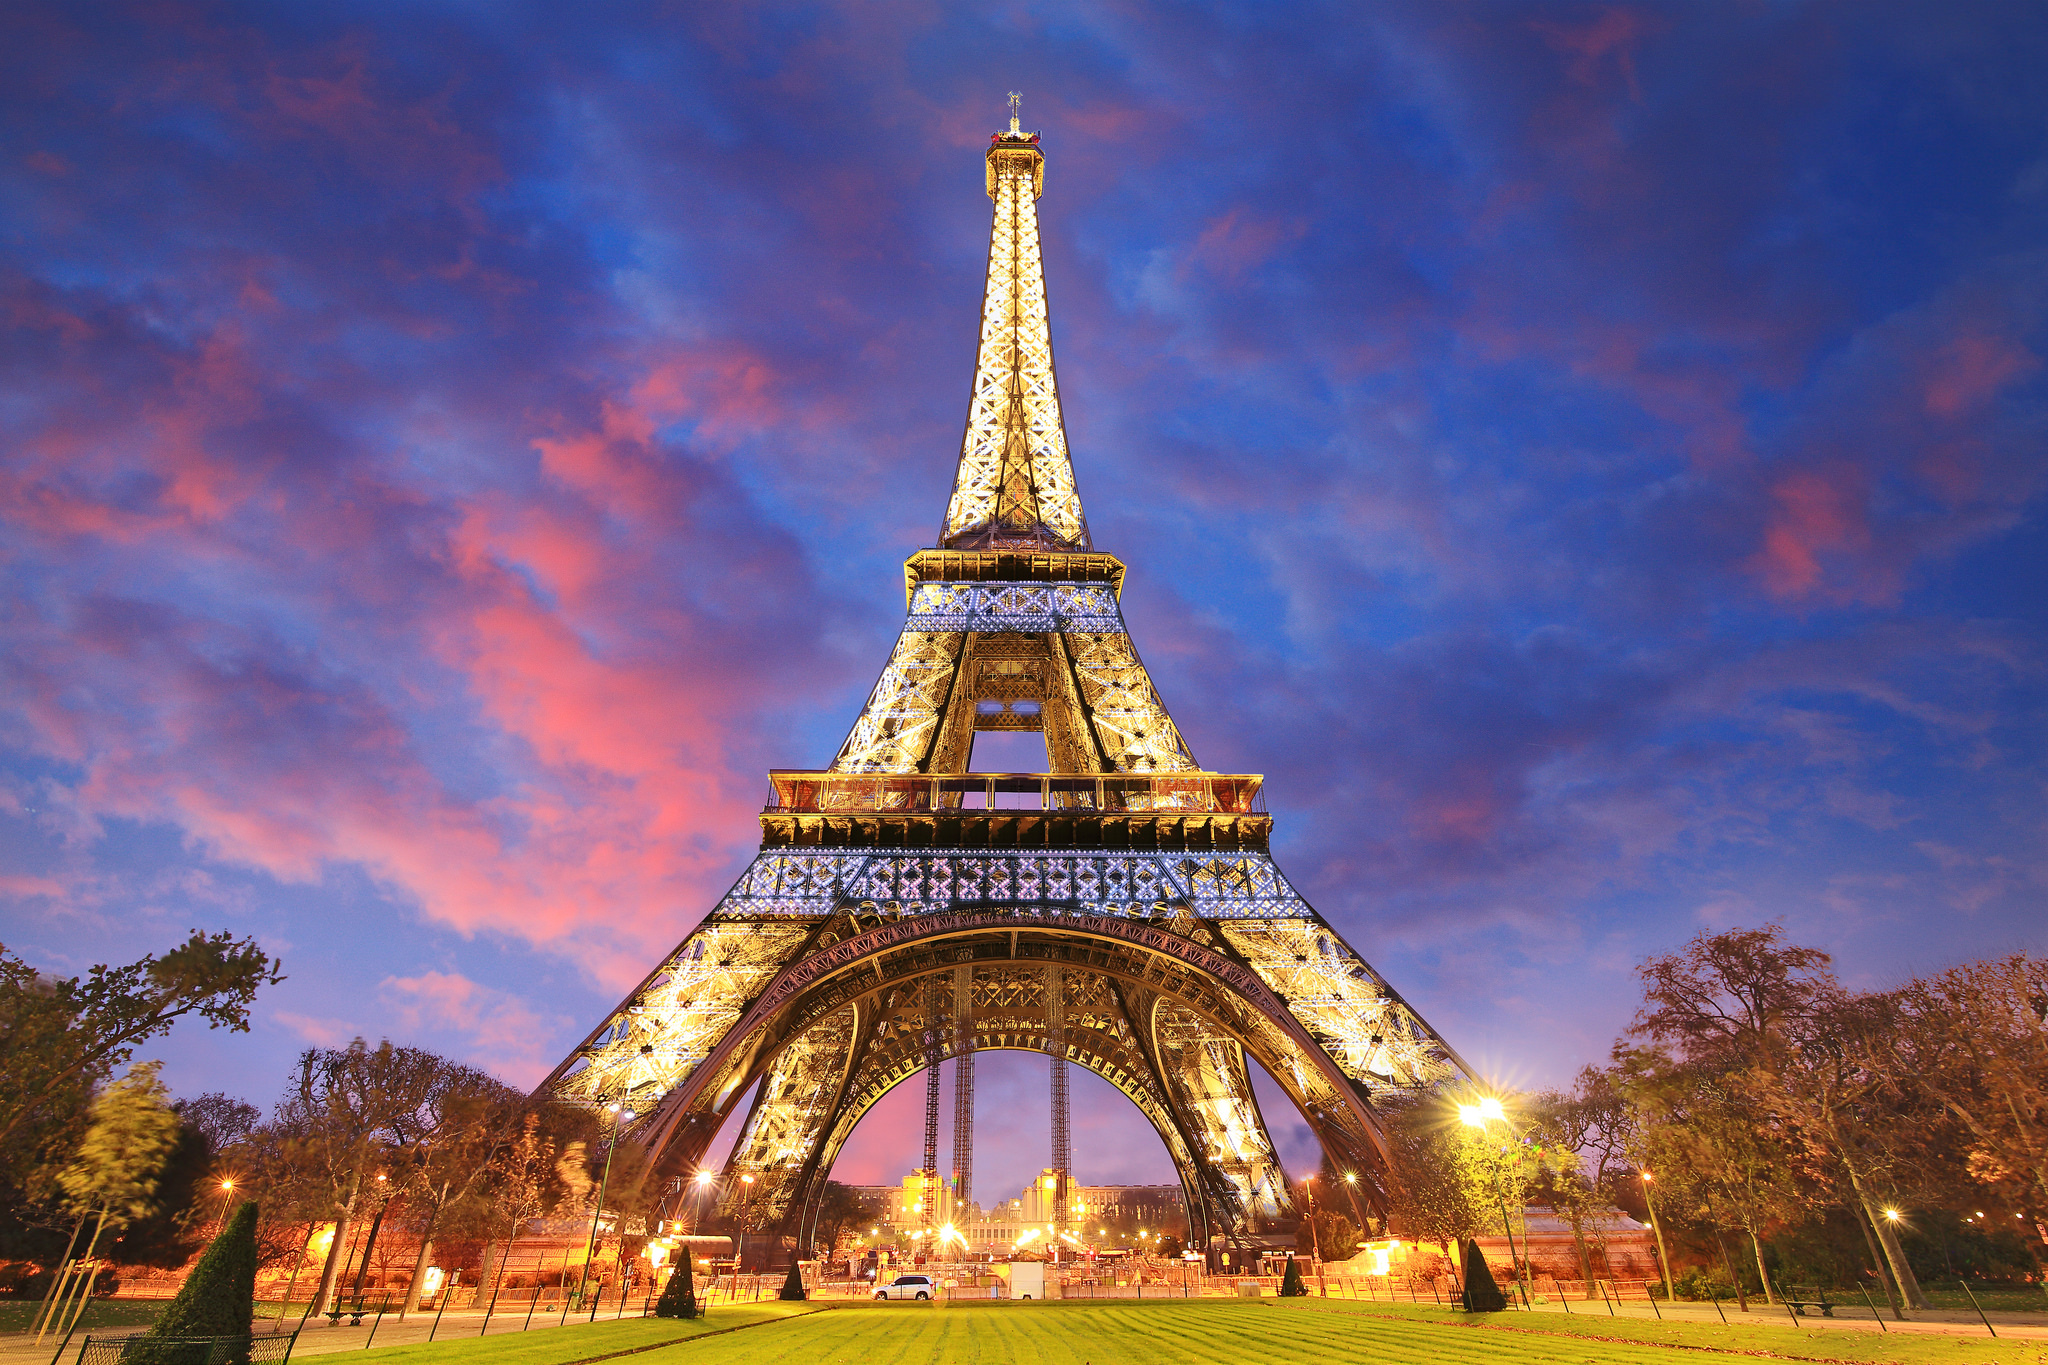 Tổng Hợp 50+ Hình Ảnh Tháp Eiffel Đẹp, Lộng Lấy, Hùng Vĩ Nhất 4